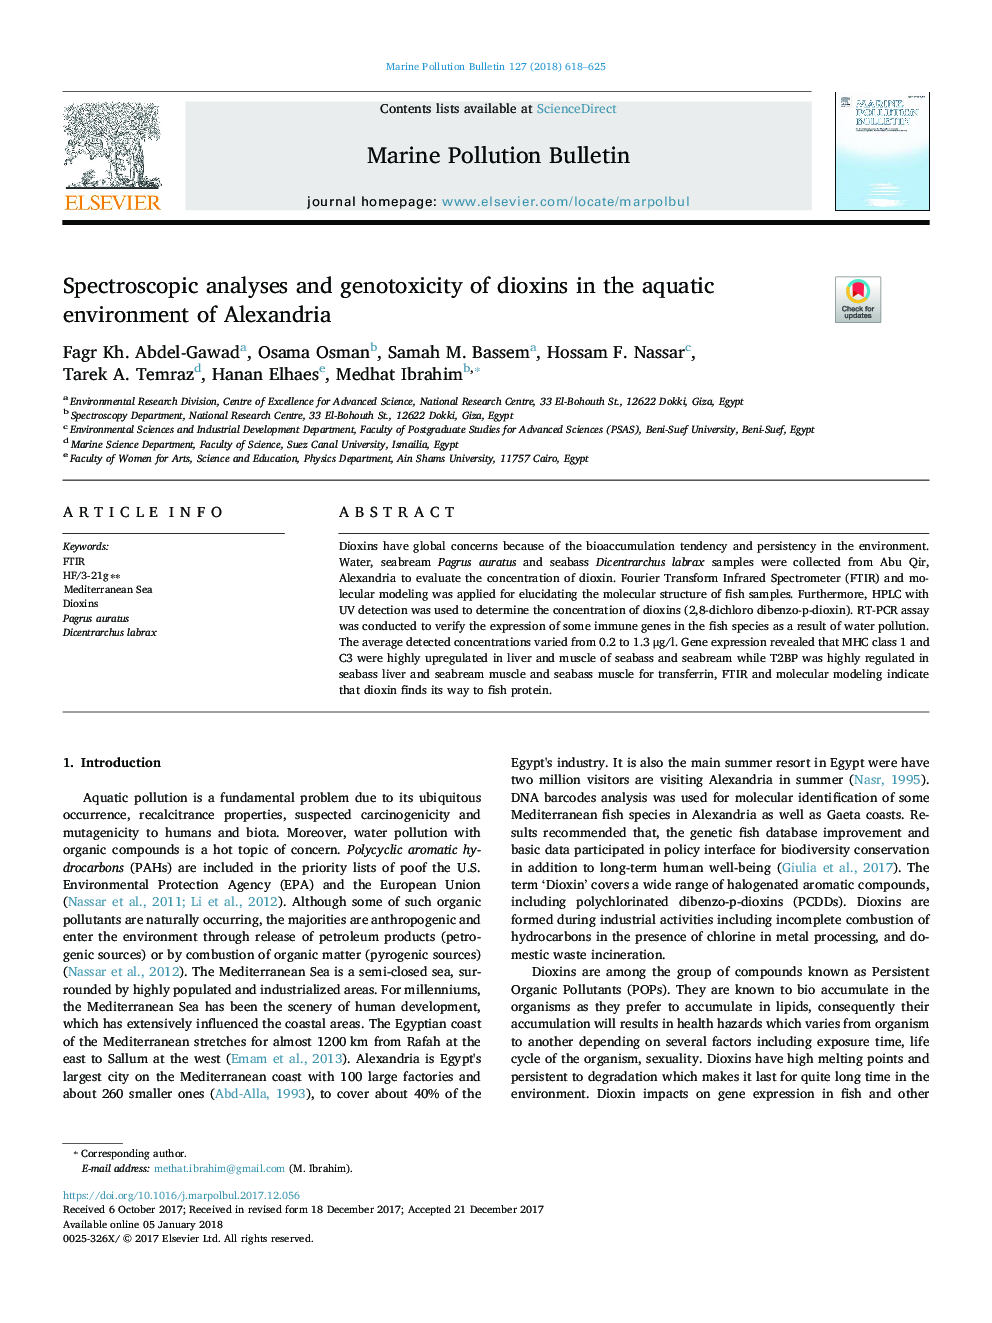 تجزیه و تحلیل اسپکتروسکوپی و ژنوتوکسید دیاکسین در محیط آبوهوای اسکندریه 